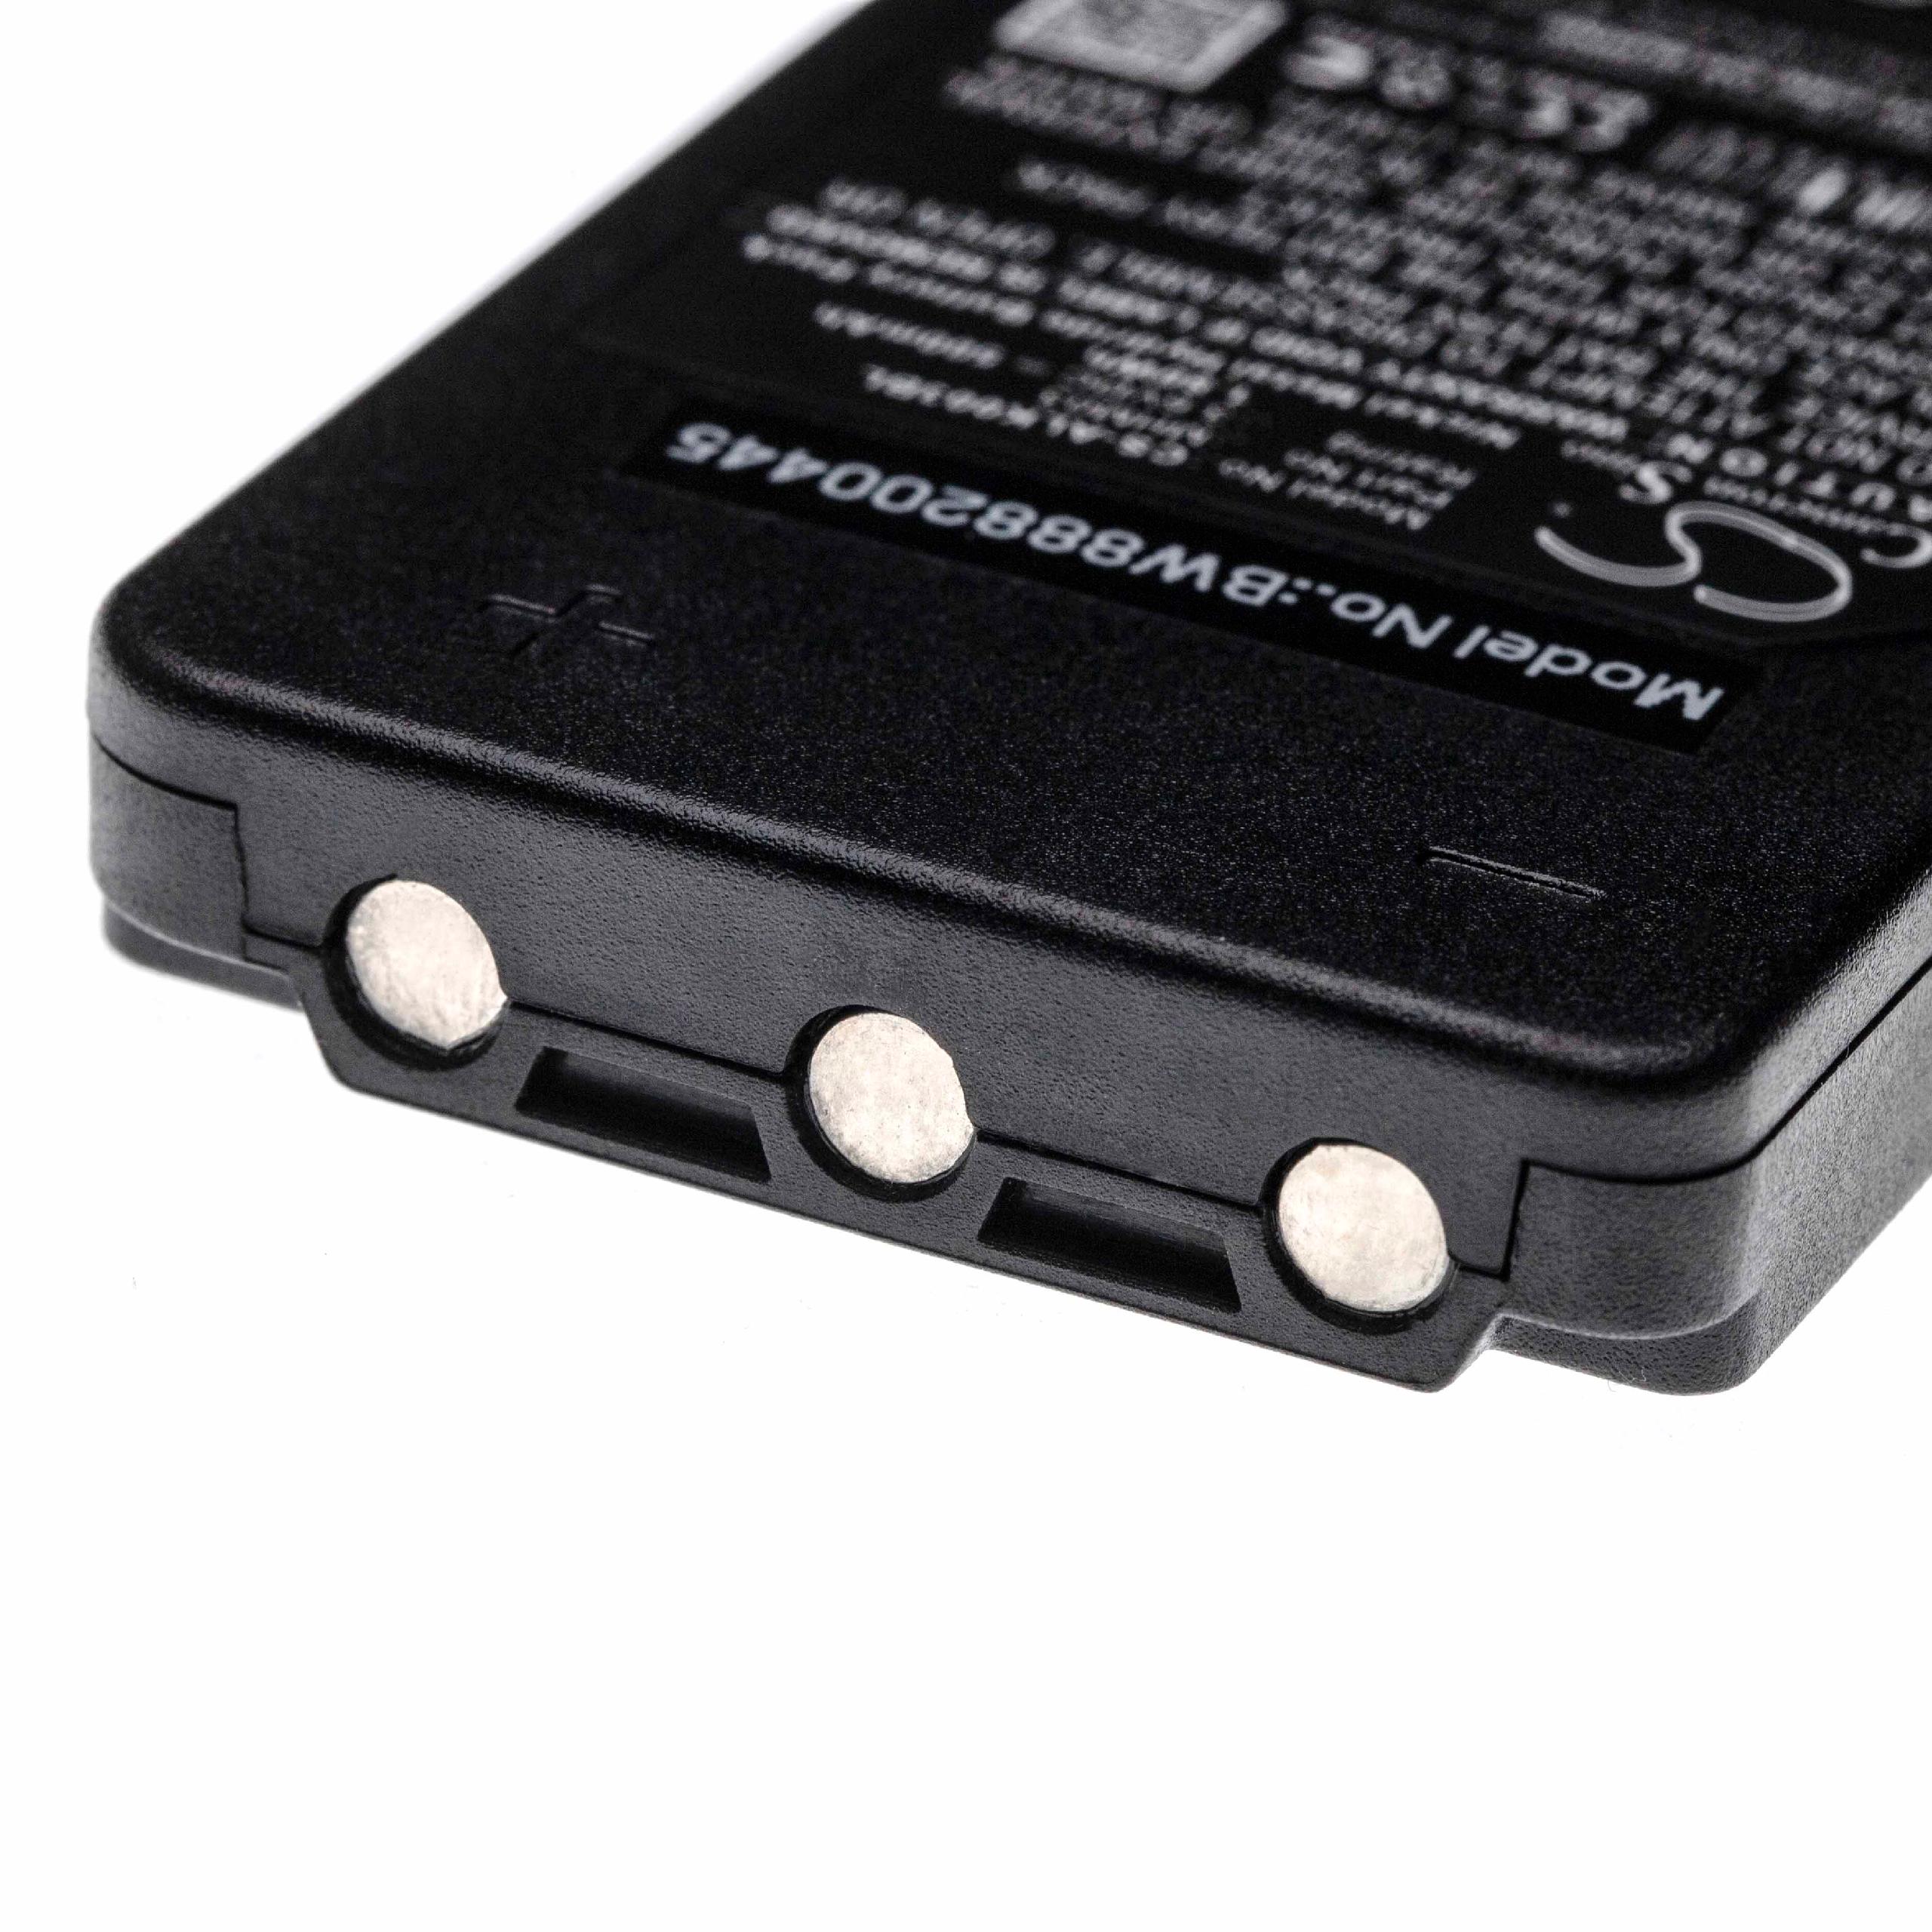 Batteria per radiocomando industriale sostituisce Autec MHM03, LPM01LI, LPM01 Autec - 500mAh 3,6V NiMH